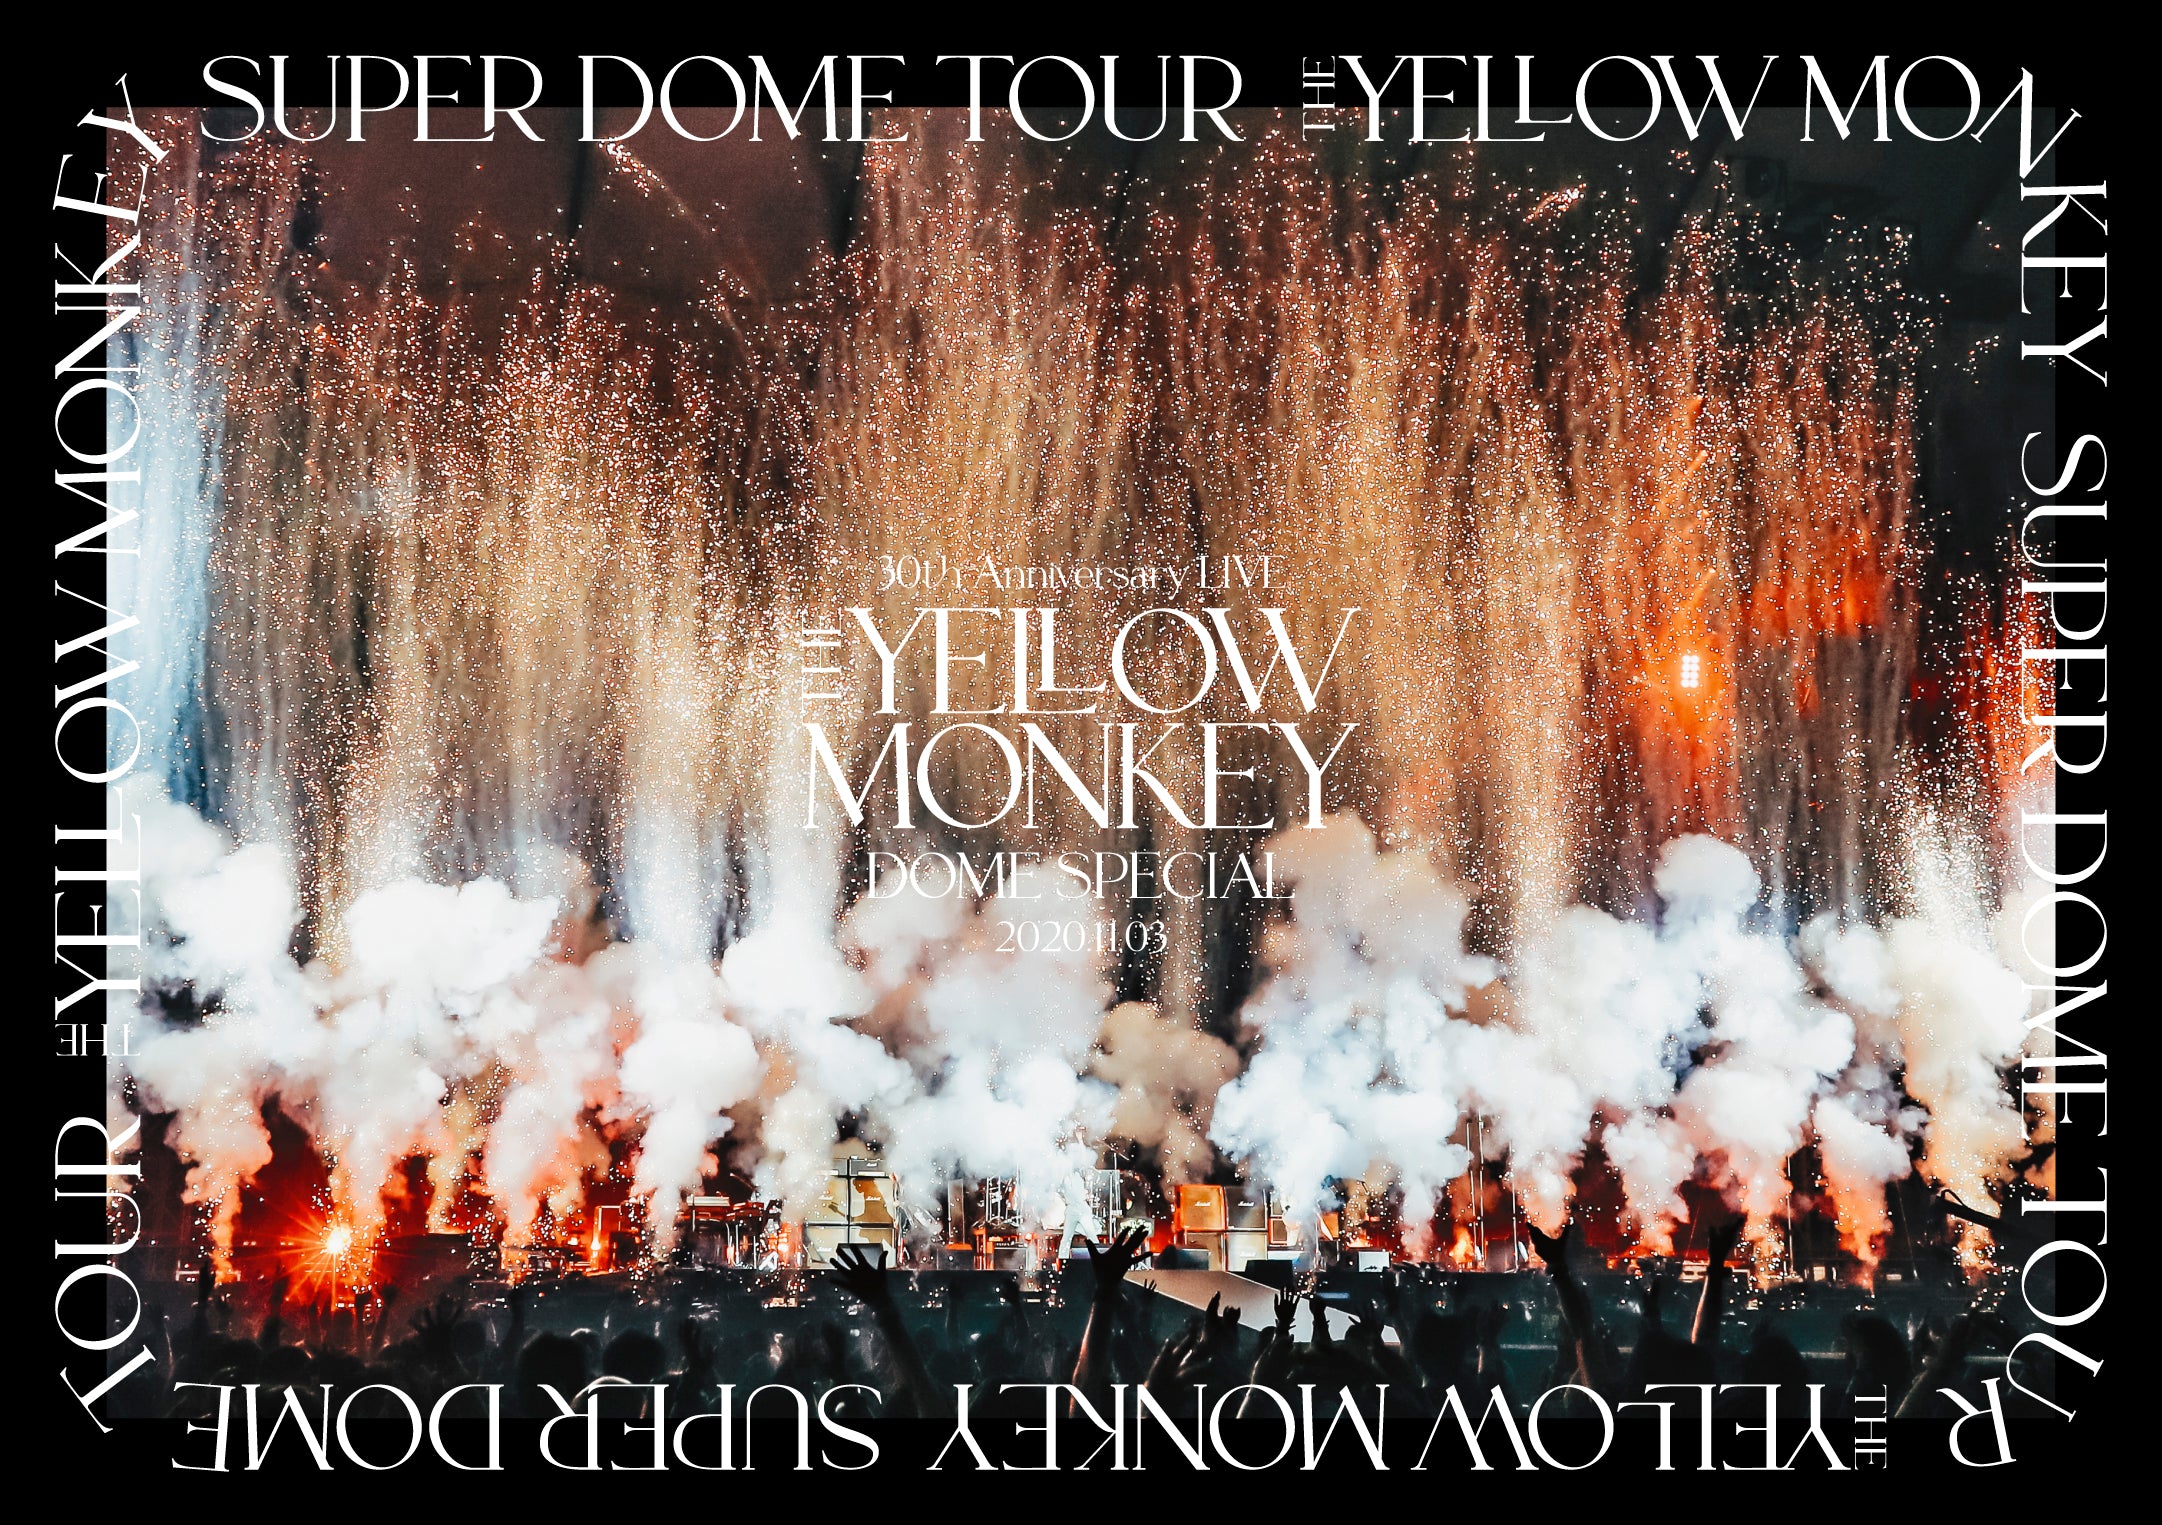 THE YELLOW MONEY SUPER DOME TOUR 30THTHEYELLOWMONKEY